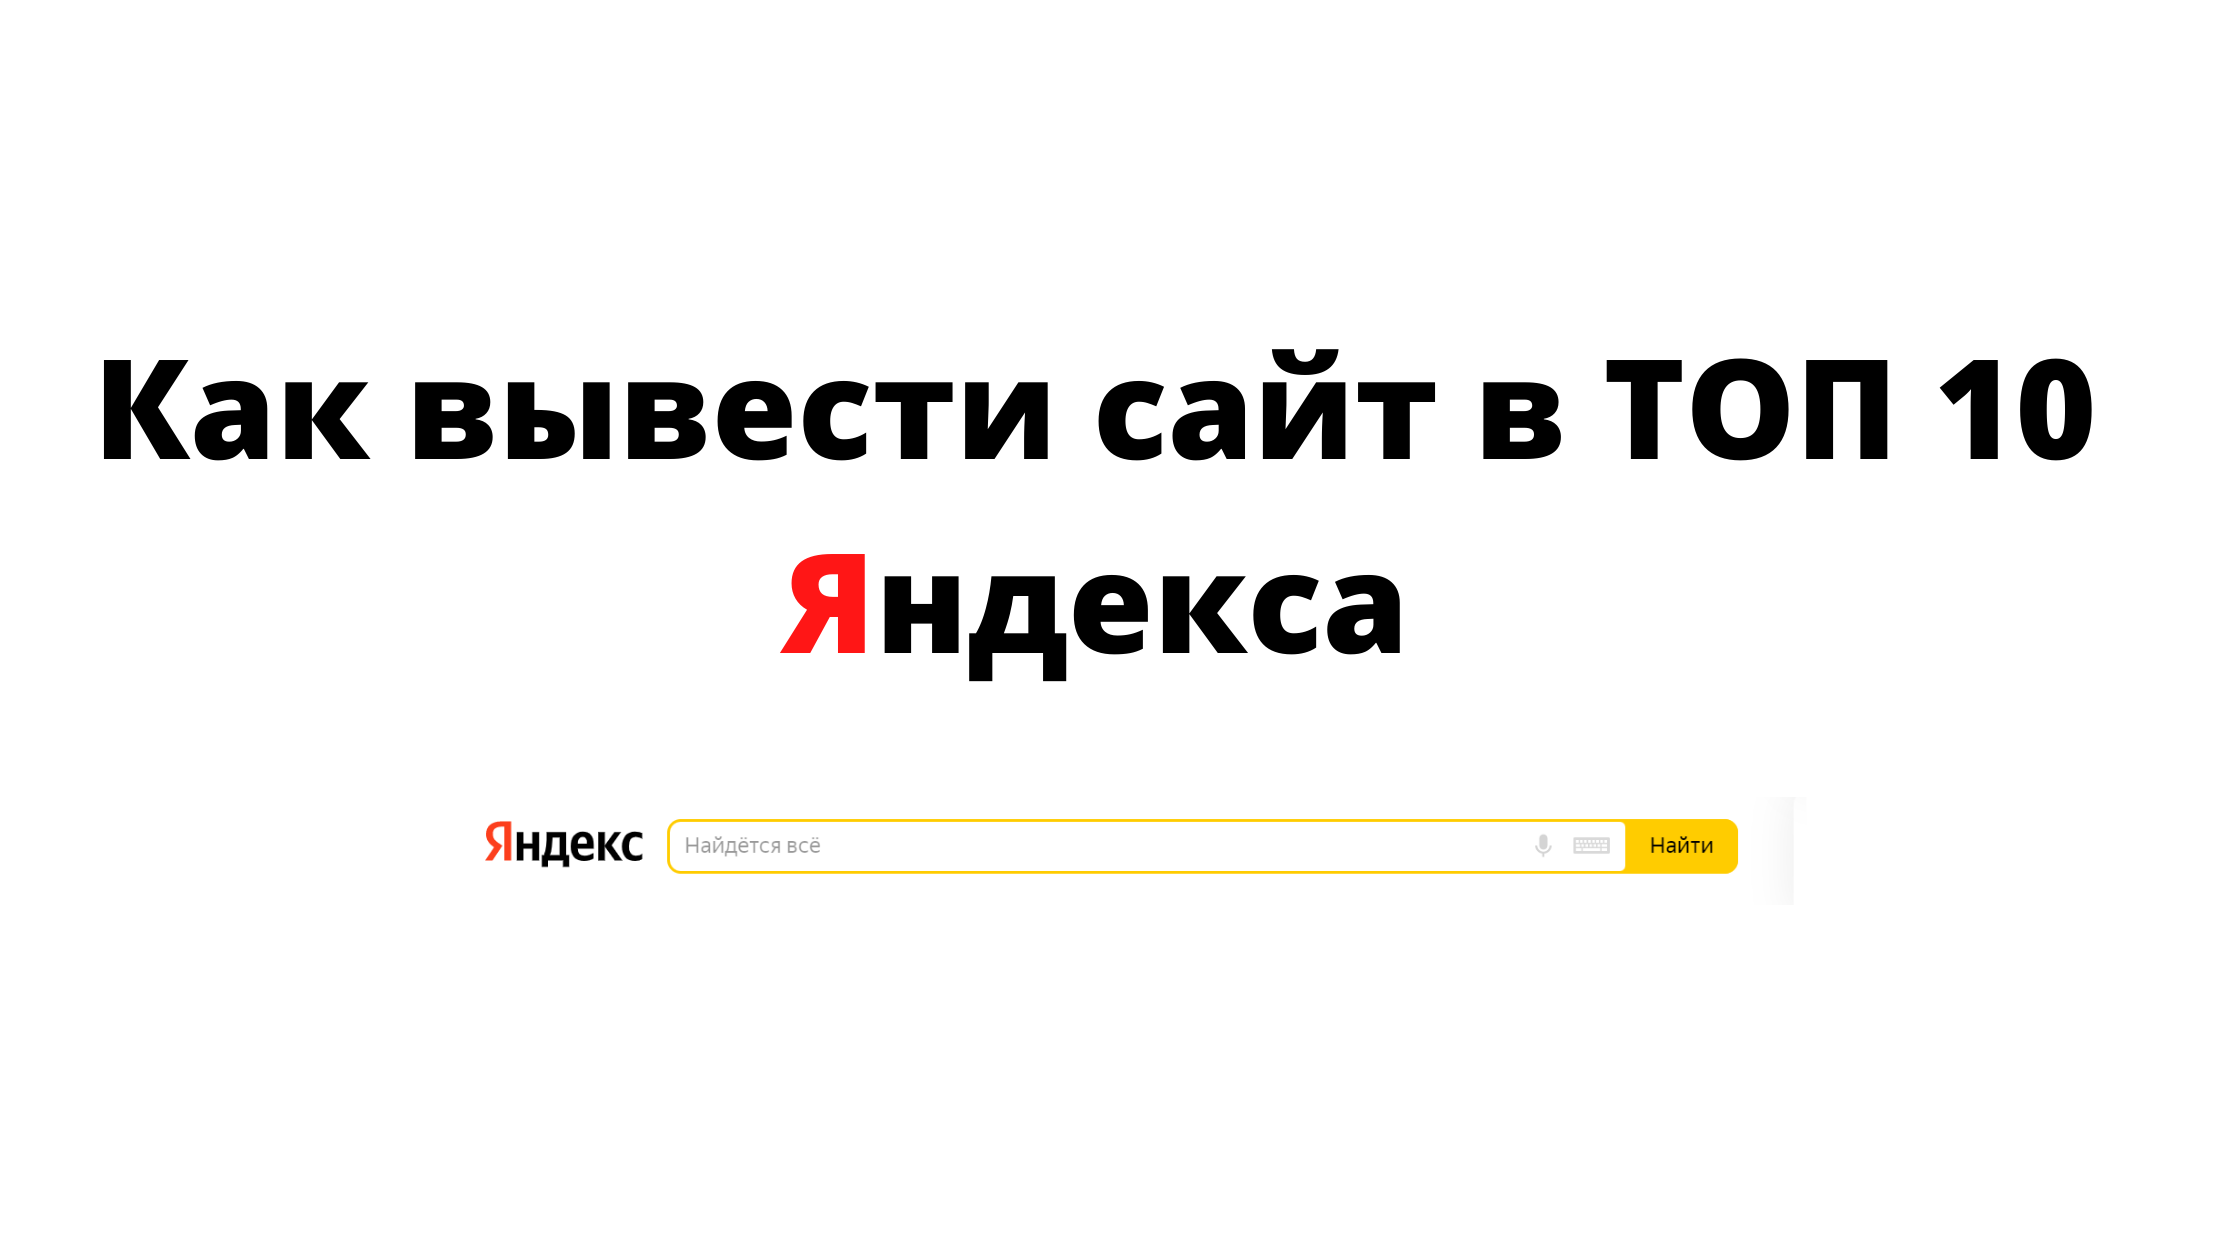 Продвижение сайта в ТОП Яндекса 10